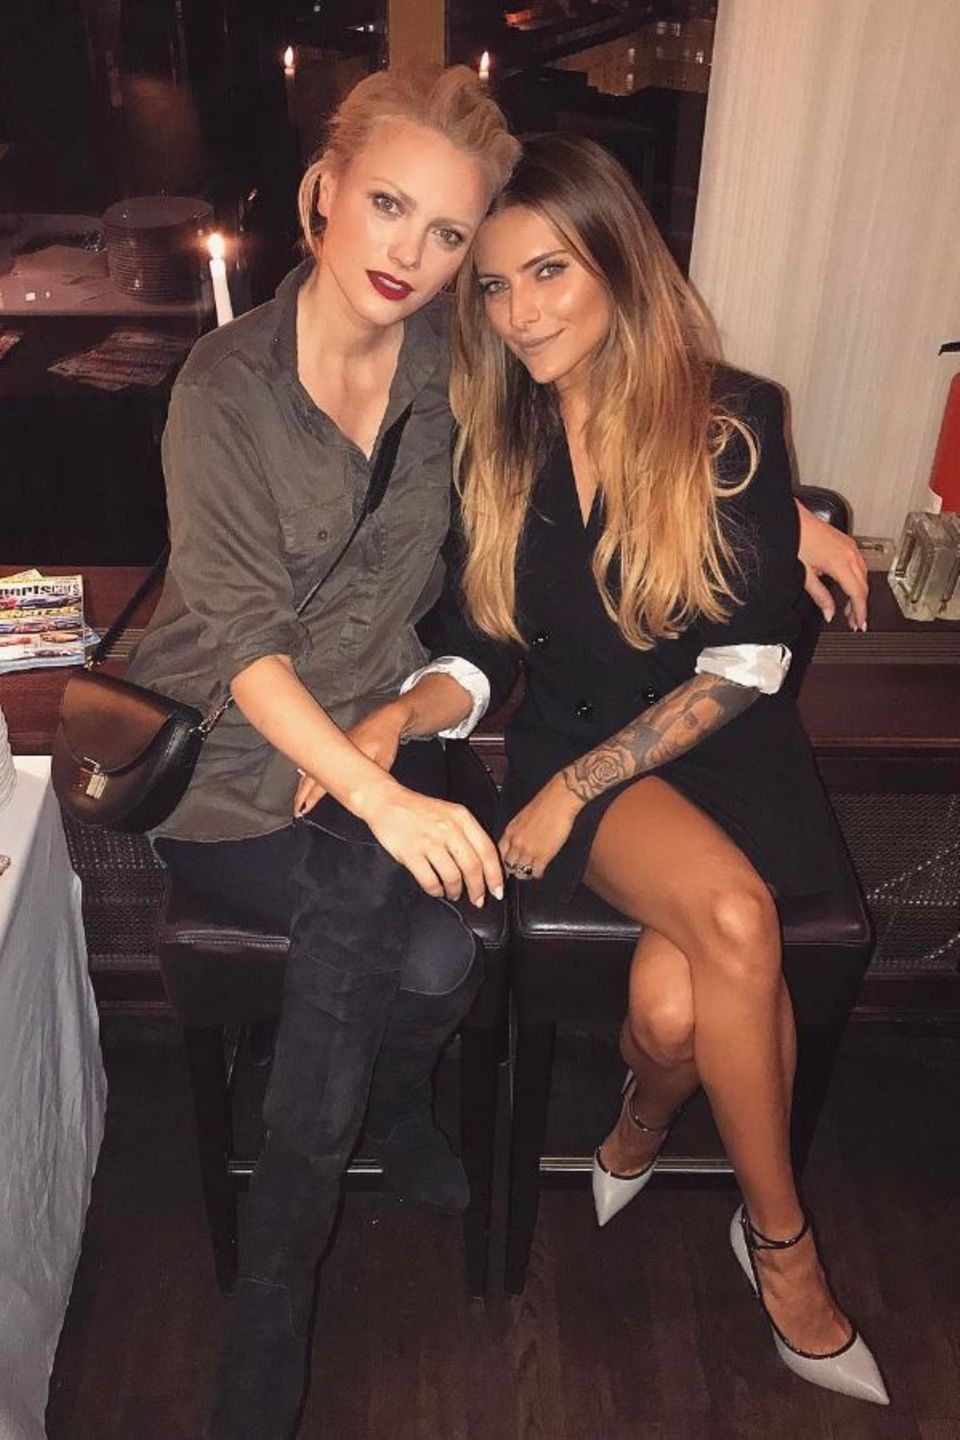 Franziska Knuppe und Sophia Thomalla  "Hot, hotter, Franziska Knuppe!" - postete Sophia Thomalla. Wie das Foto beweist, verstehen sich diese beiden Schönheiten blendend.